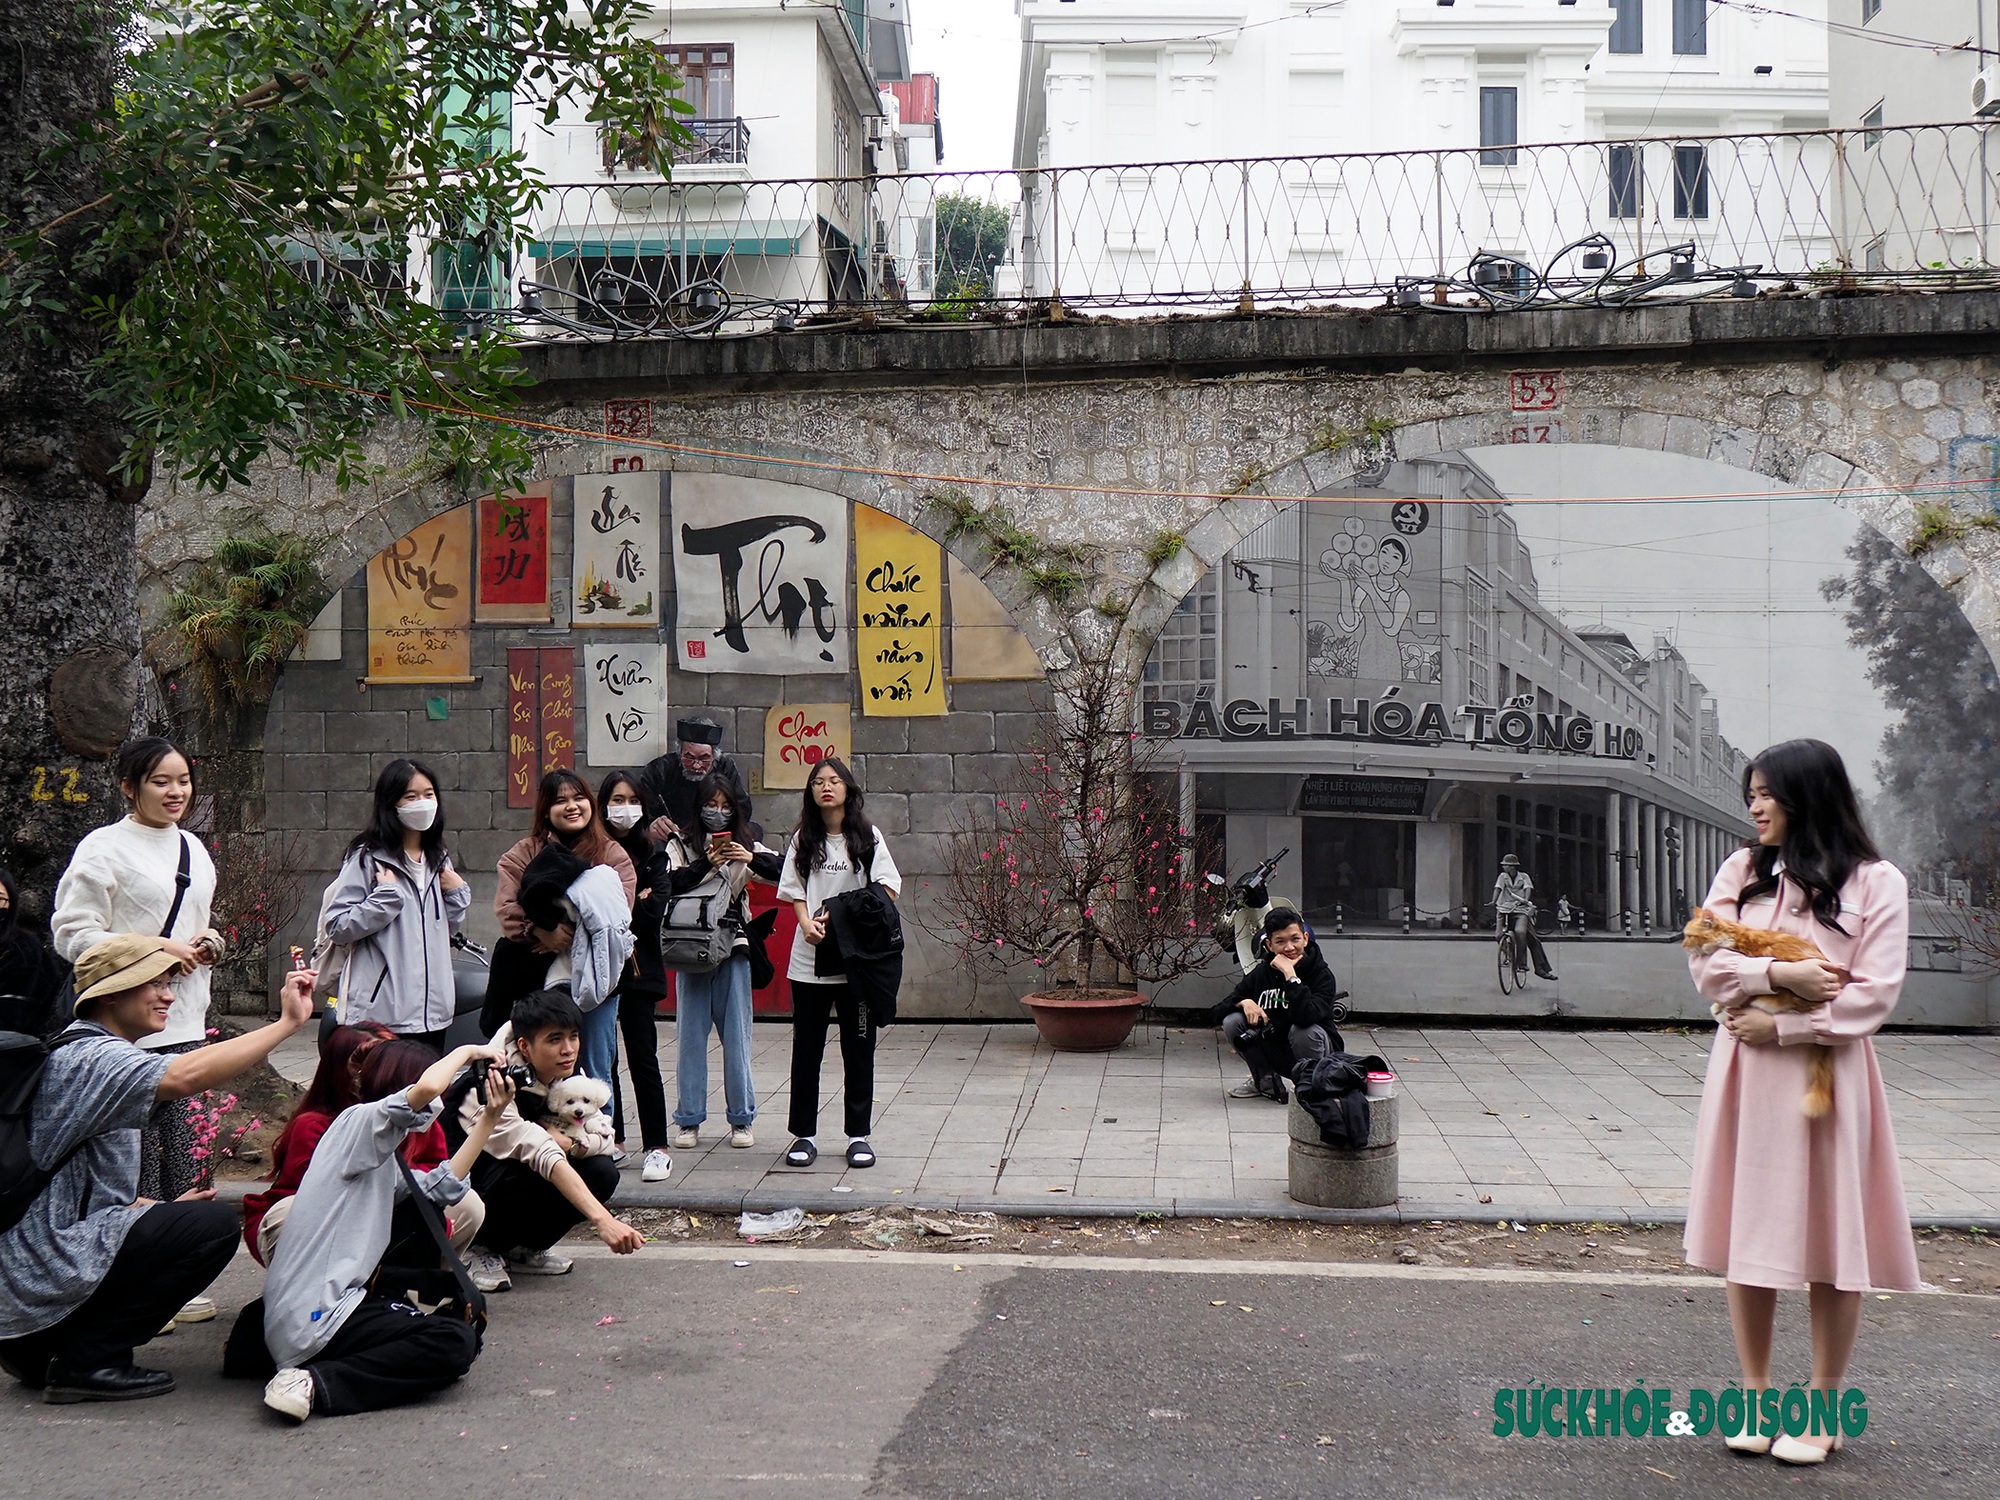 Giới trẻ mang &quot;mèo cưng&quot; đến phố bích họa Phùng Hưng check-in dịp Tết  - Ảnh 1.